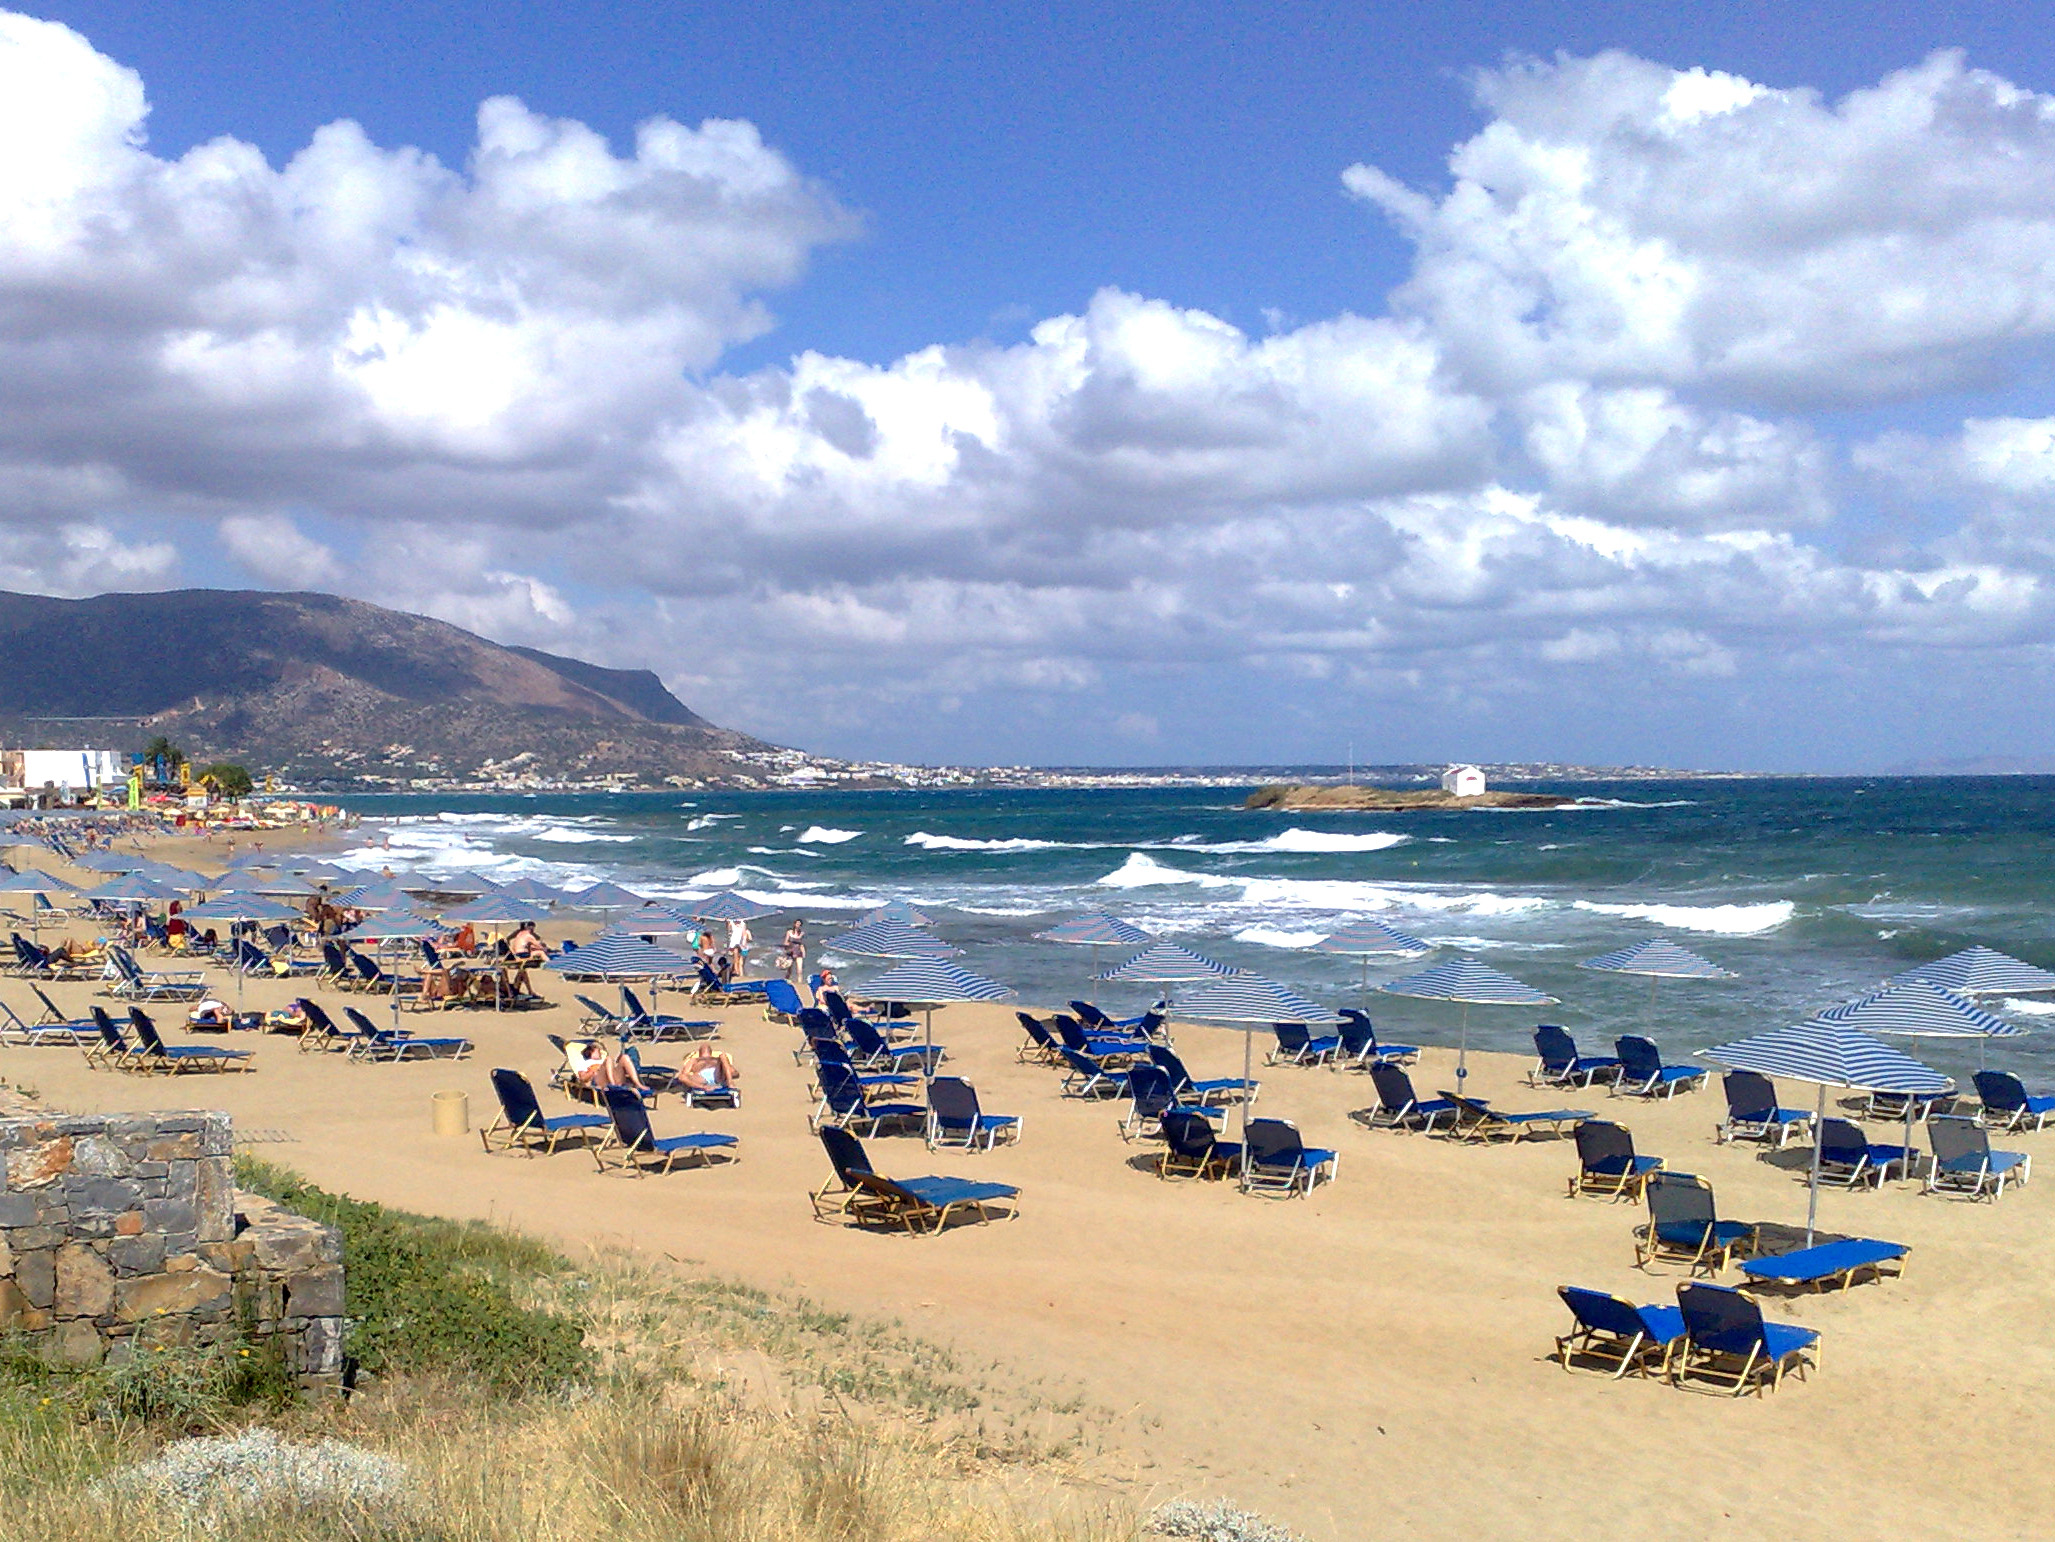 Υπόθεση Ελλάδας και Ισπανίας ο τουρισμός στη Μεσόγειο φέτος